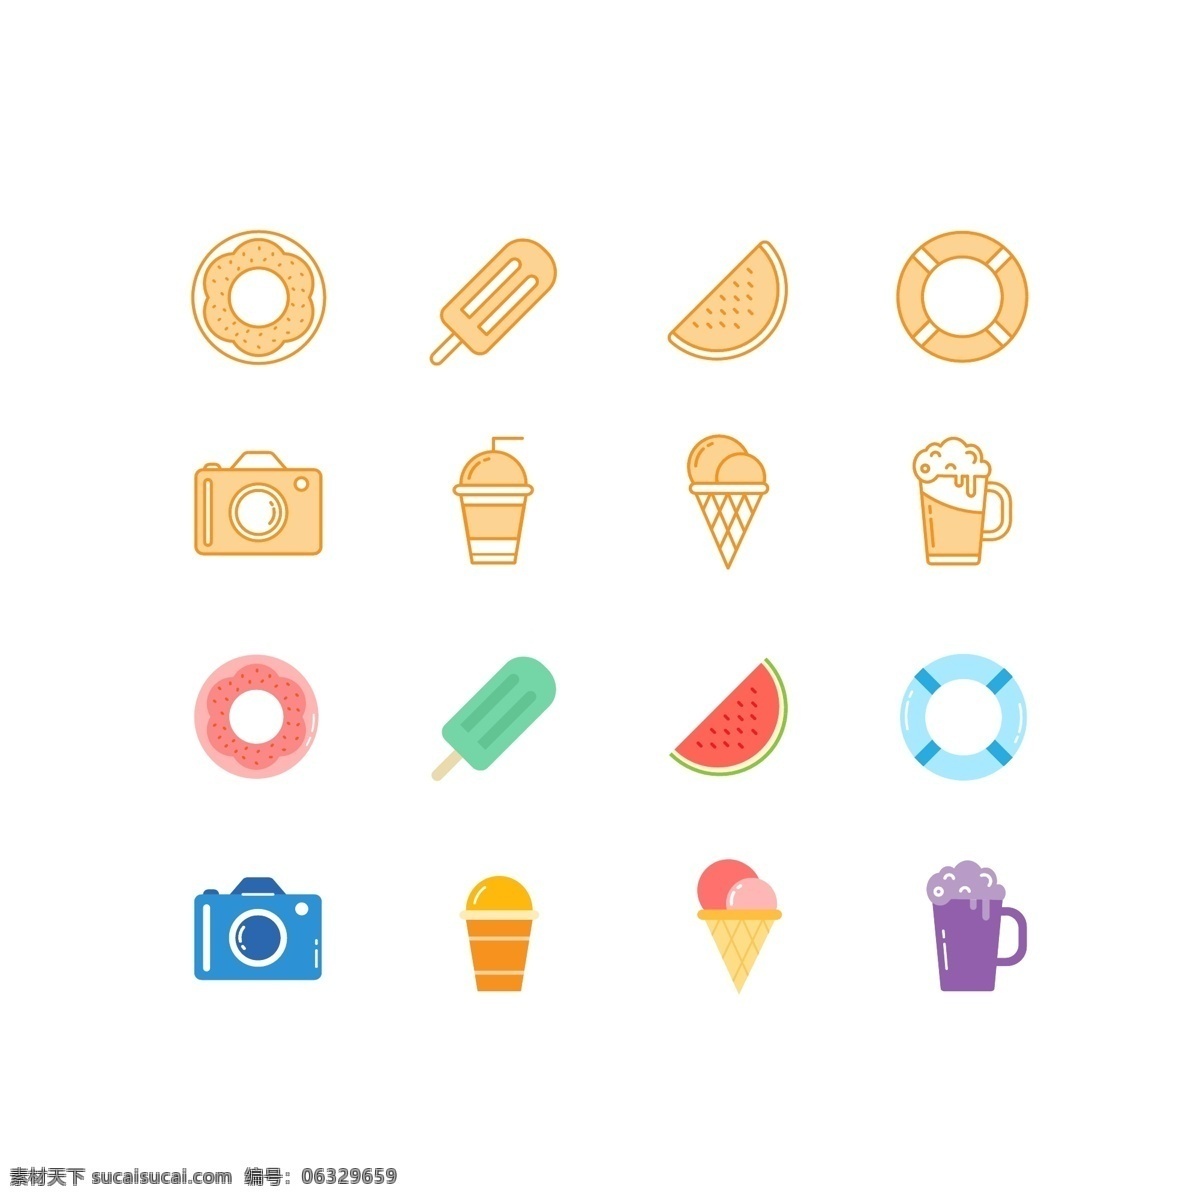 夏日 清新 彩色 图标 icon 源文件 冰淇淋 夏天 相机 小清新 夏日icon